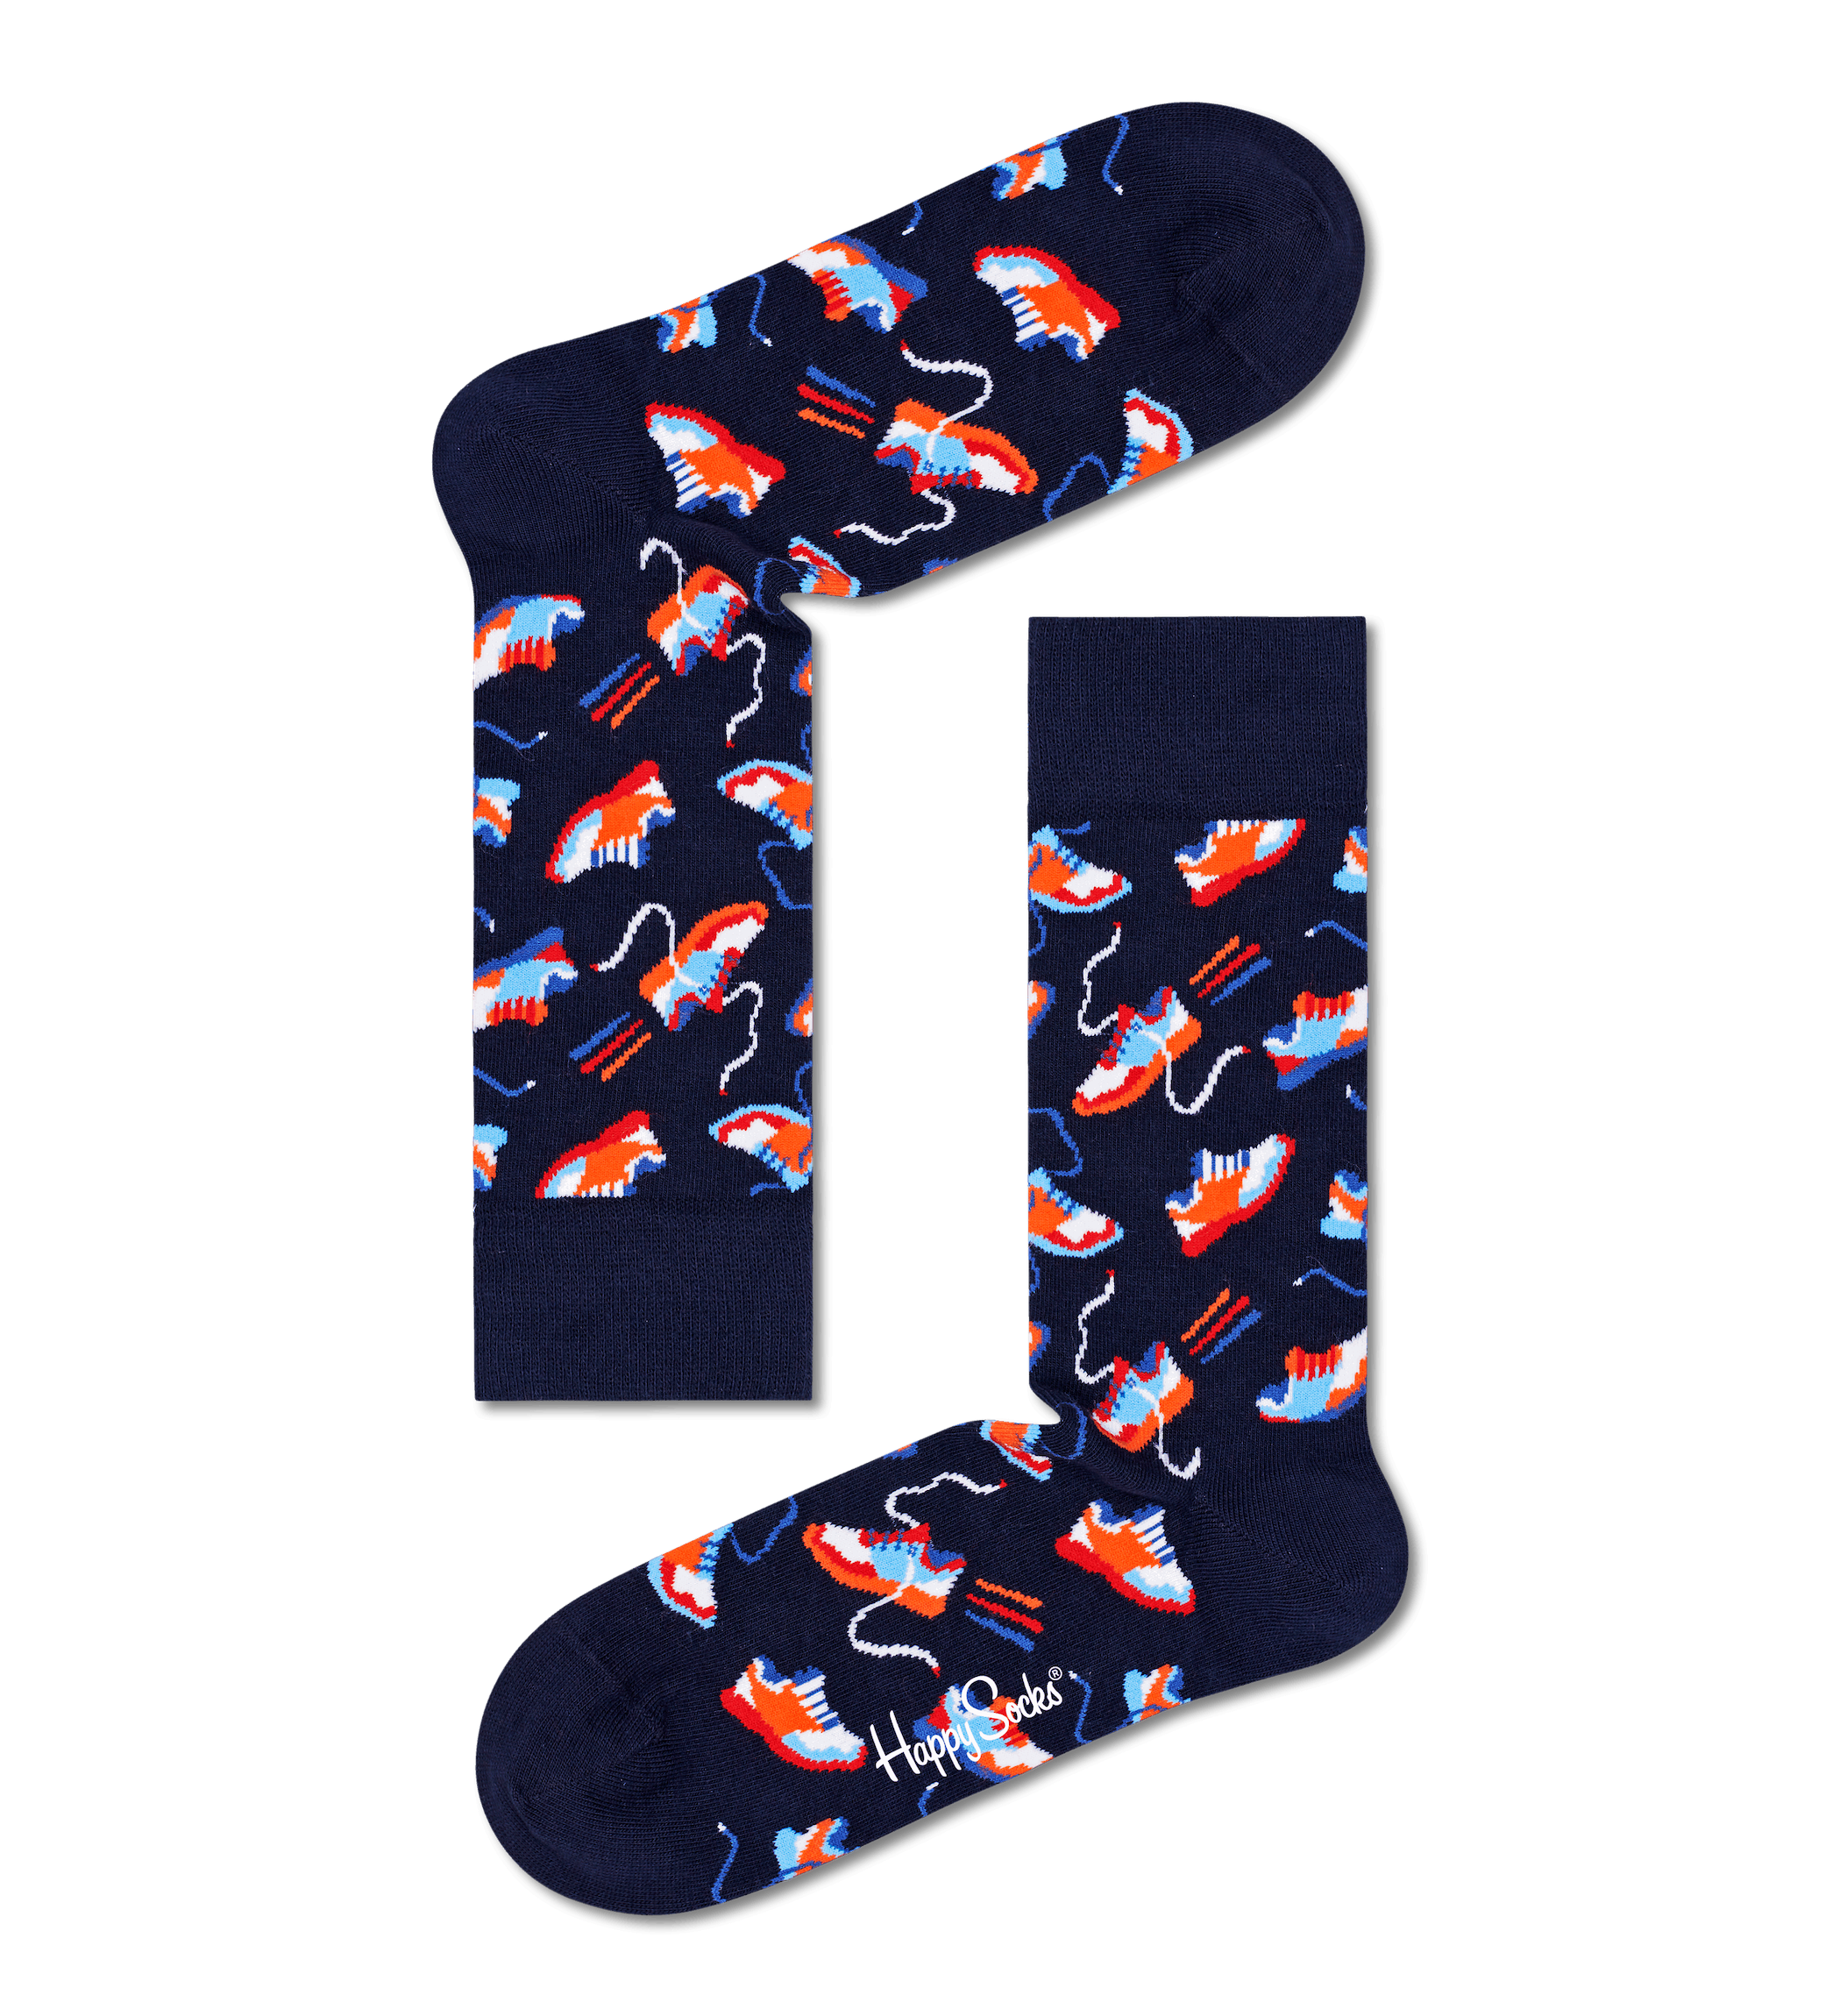 Modré ponožky Happy Socks s teniskami, vzor Run For It